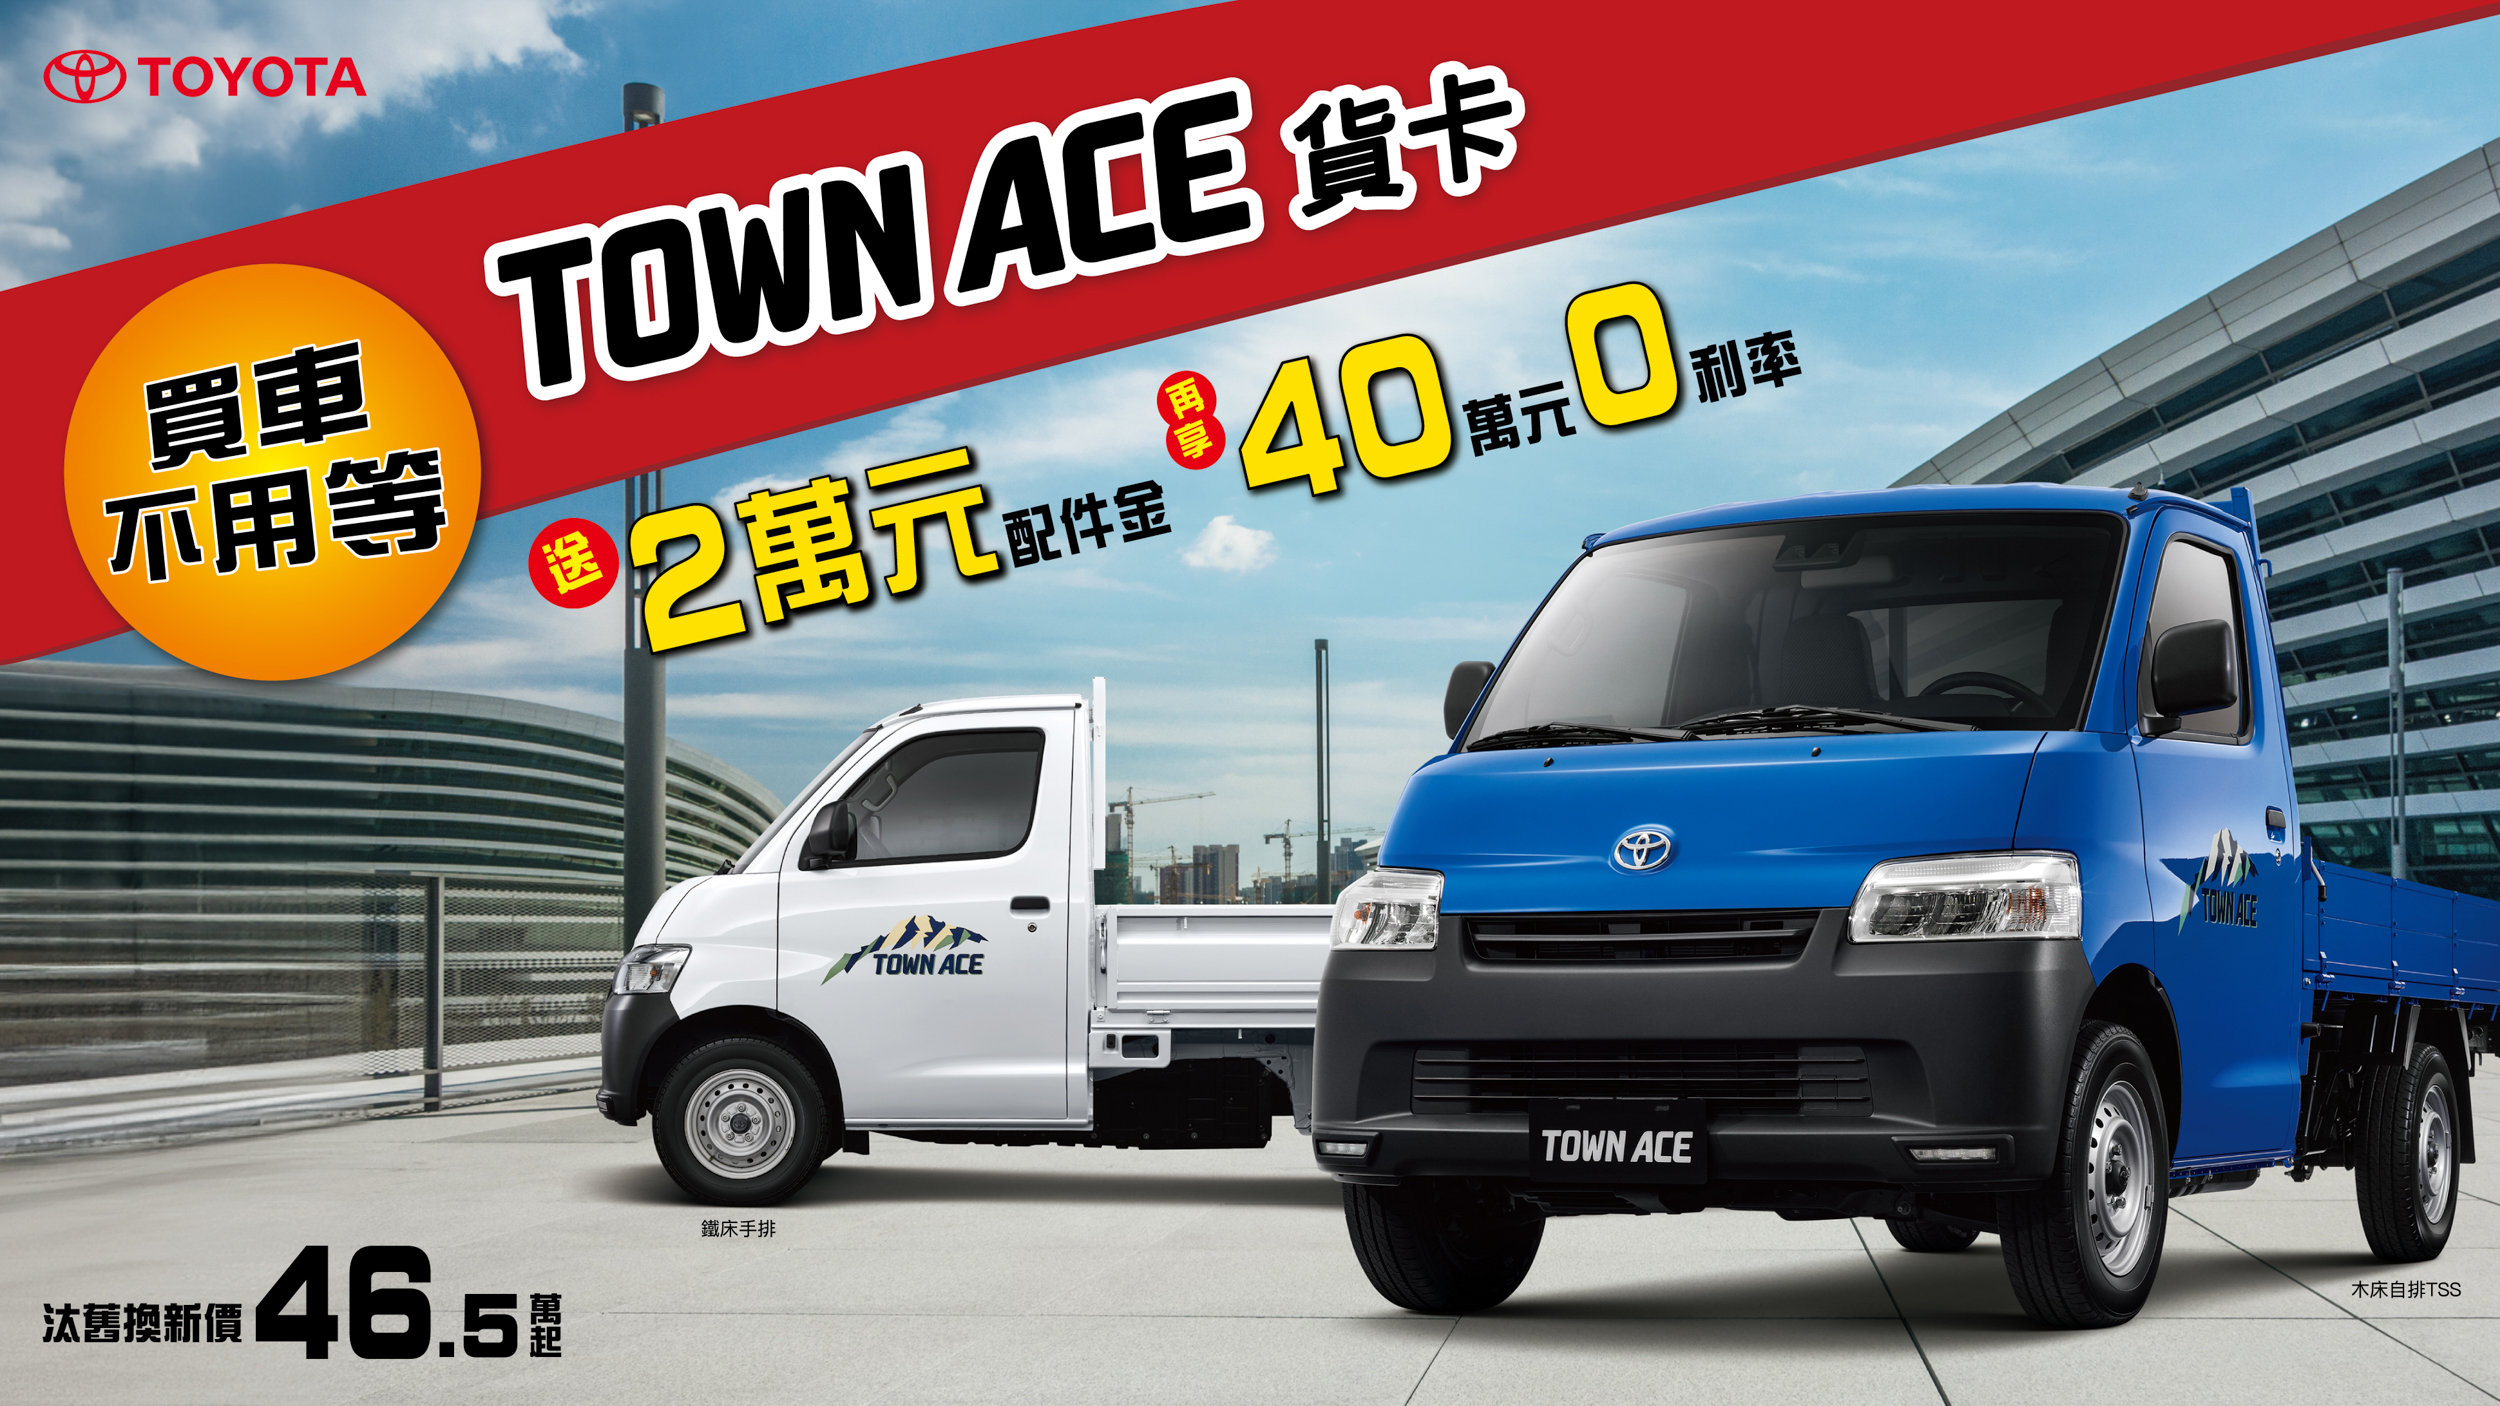 本月入主 Toyota Town Ace 貨卡 享「2 萬配件金、40 萬 0 利率優惠」